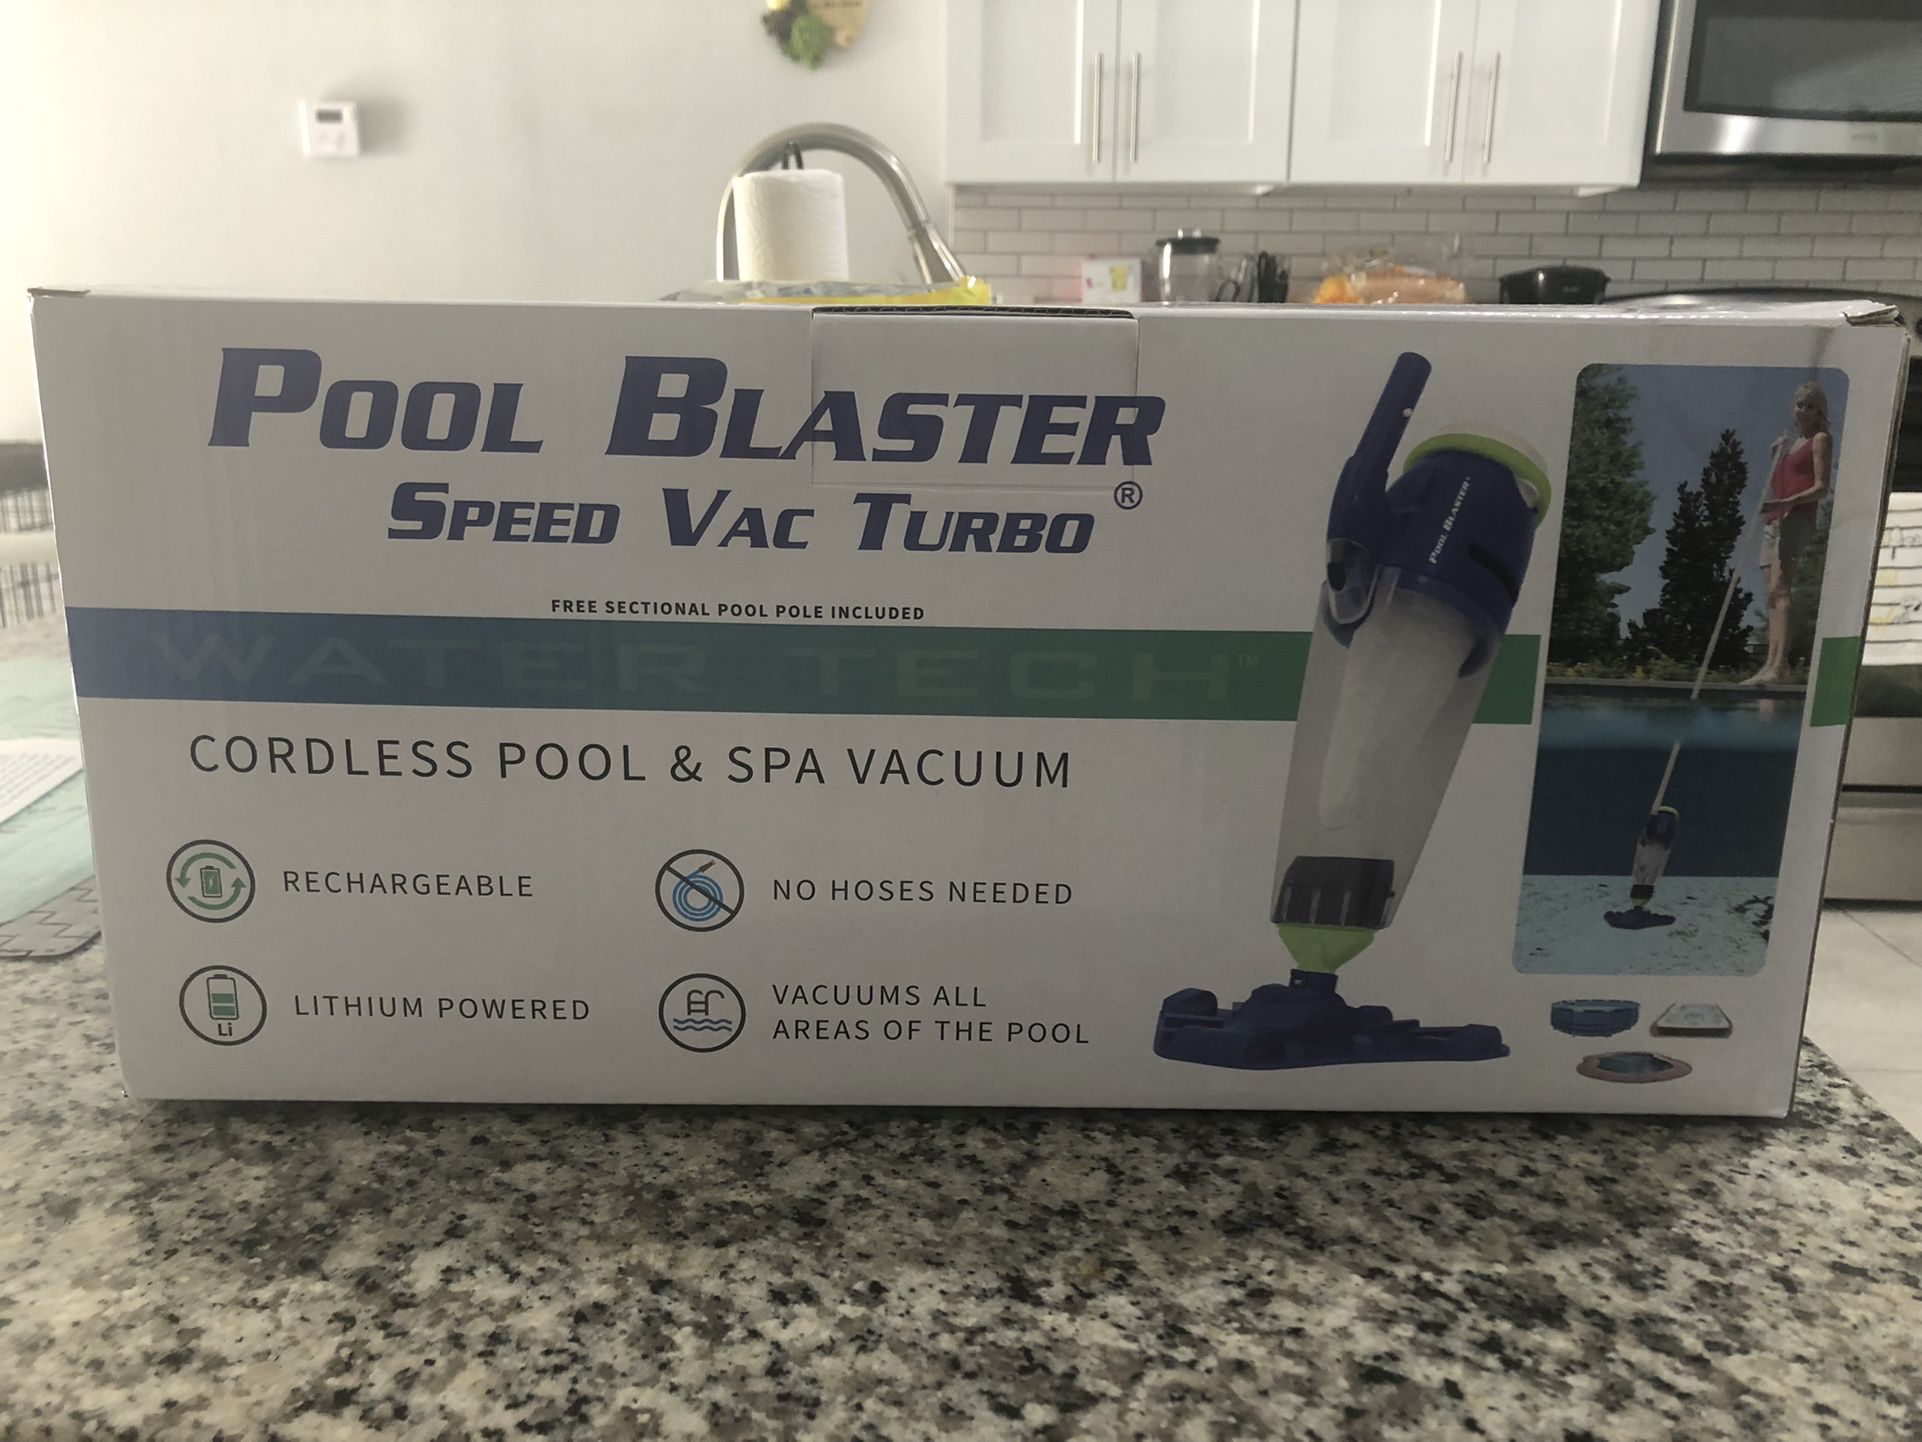 Pool Blaster Vac Turbo (Pool Vaccum)